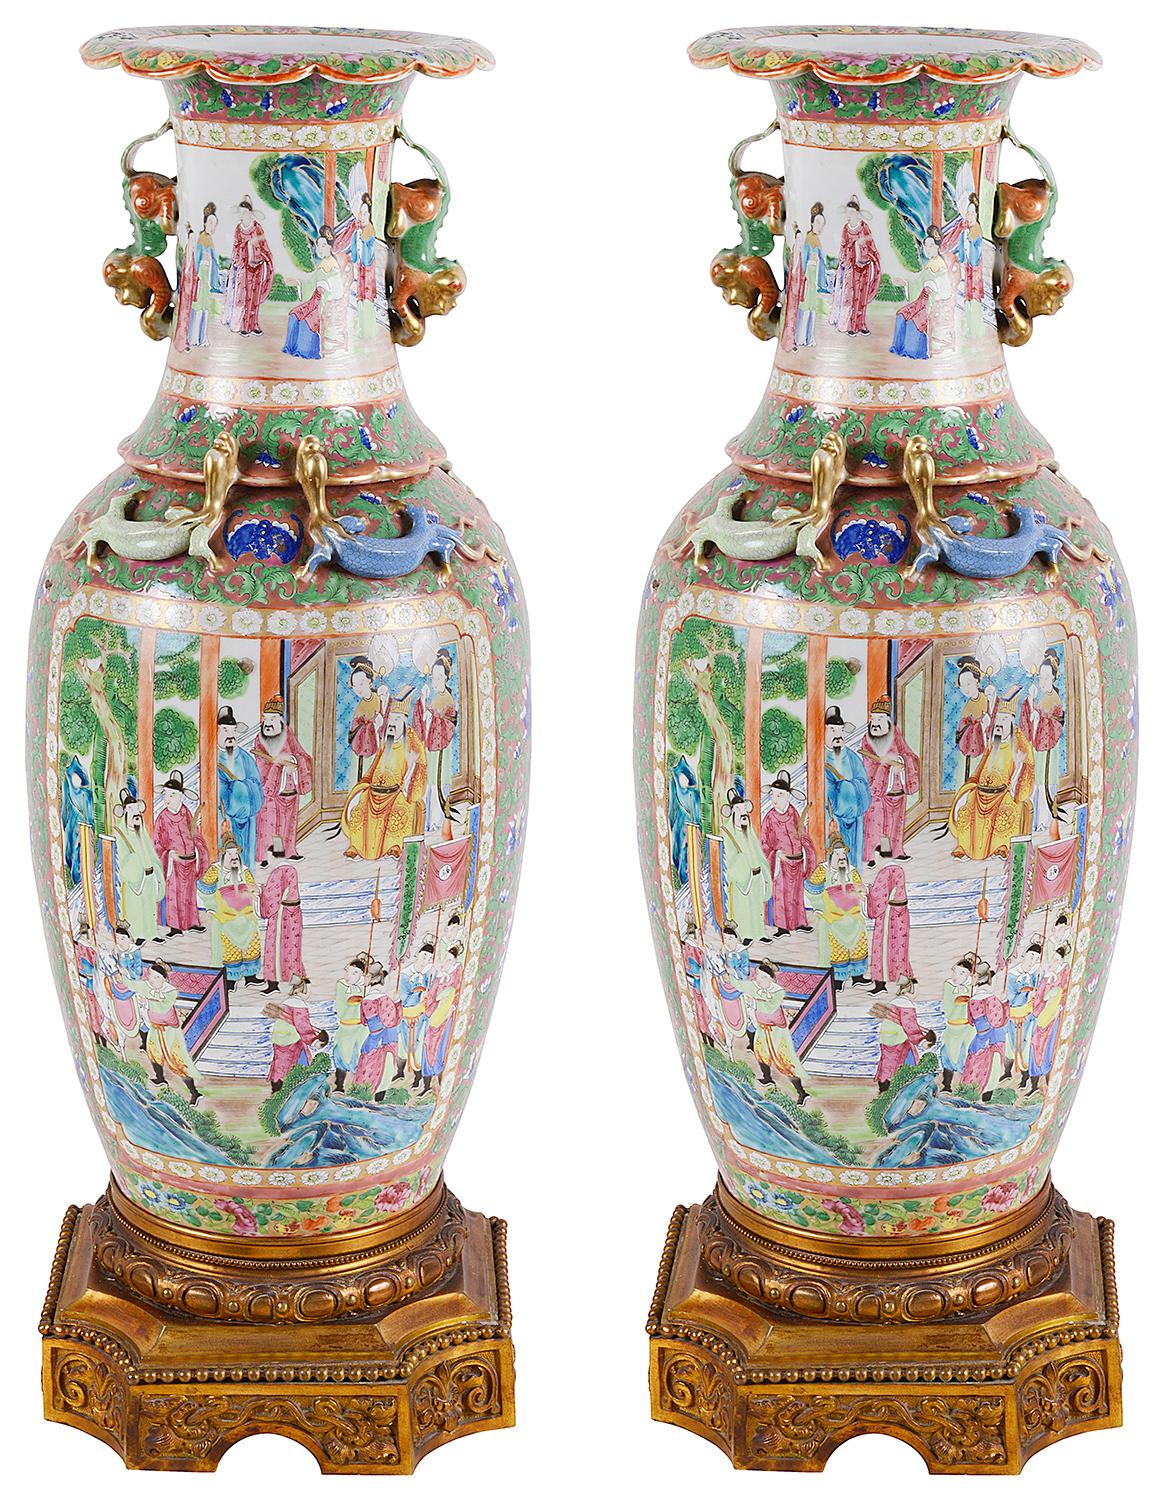 Ein sehr beeindruckendes Paar chinesischer kantonesischer oder rosafarbener Medaillonvasen oder -lampen aus dem 19. Jedes mit wunderbaren kräftigen Farben, mit klassischen orientalischen Szenen von Höflingen, die um Pagodengebäude und Gärten